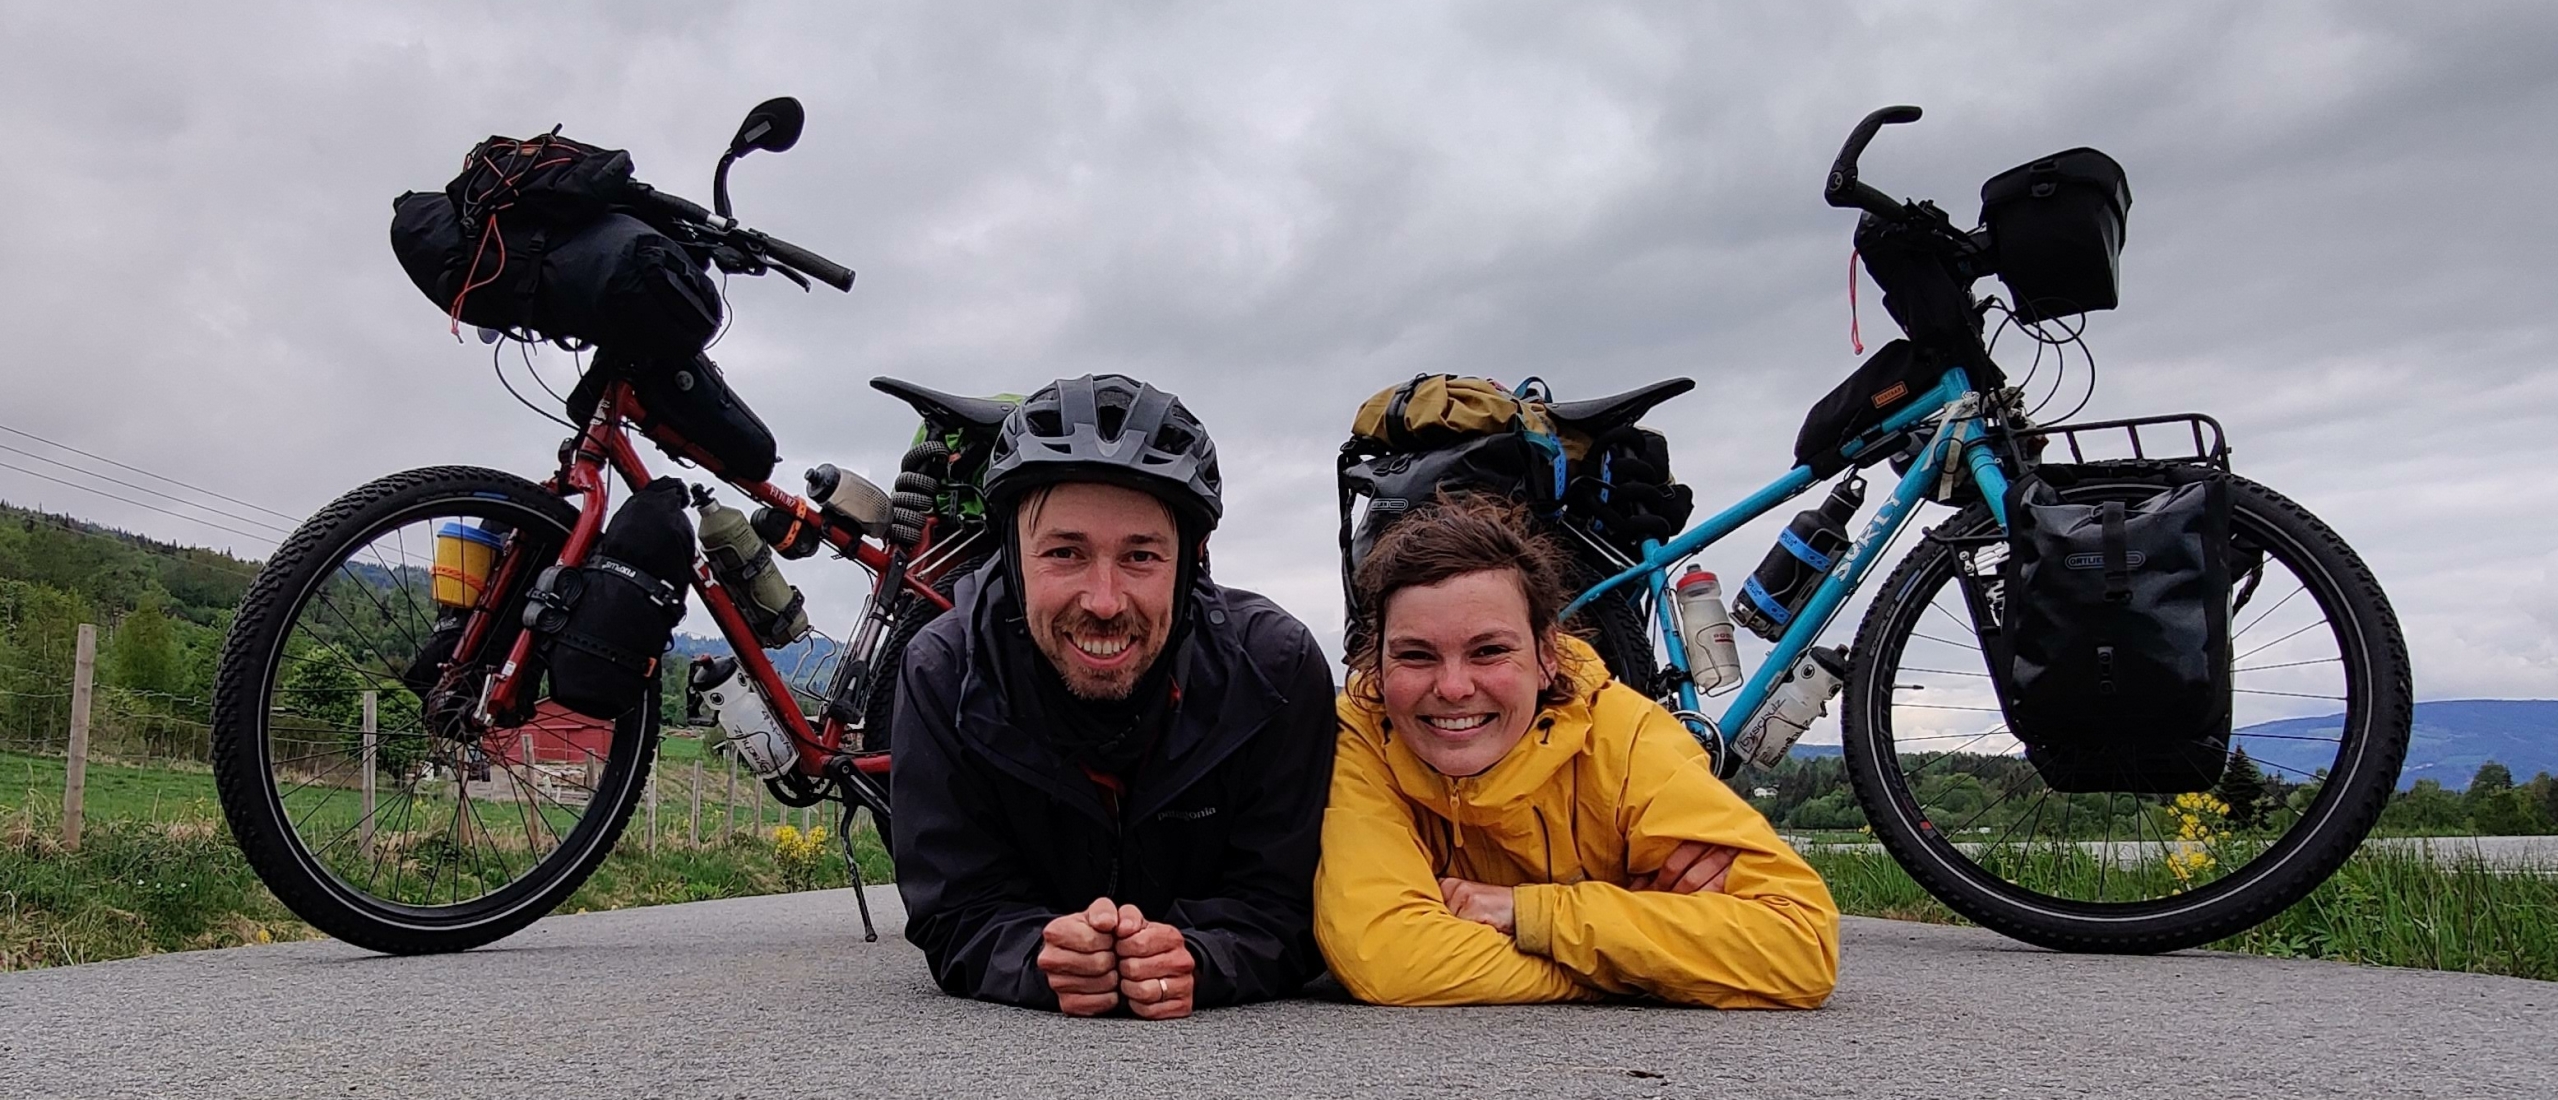 Een bikepacking fiets kiezen: Onze tips